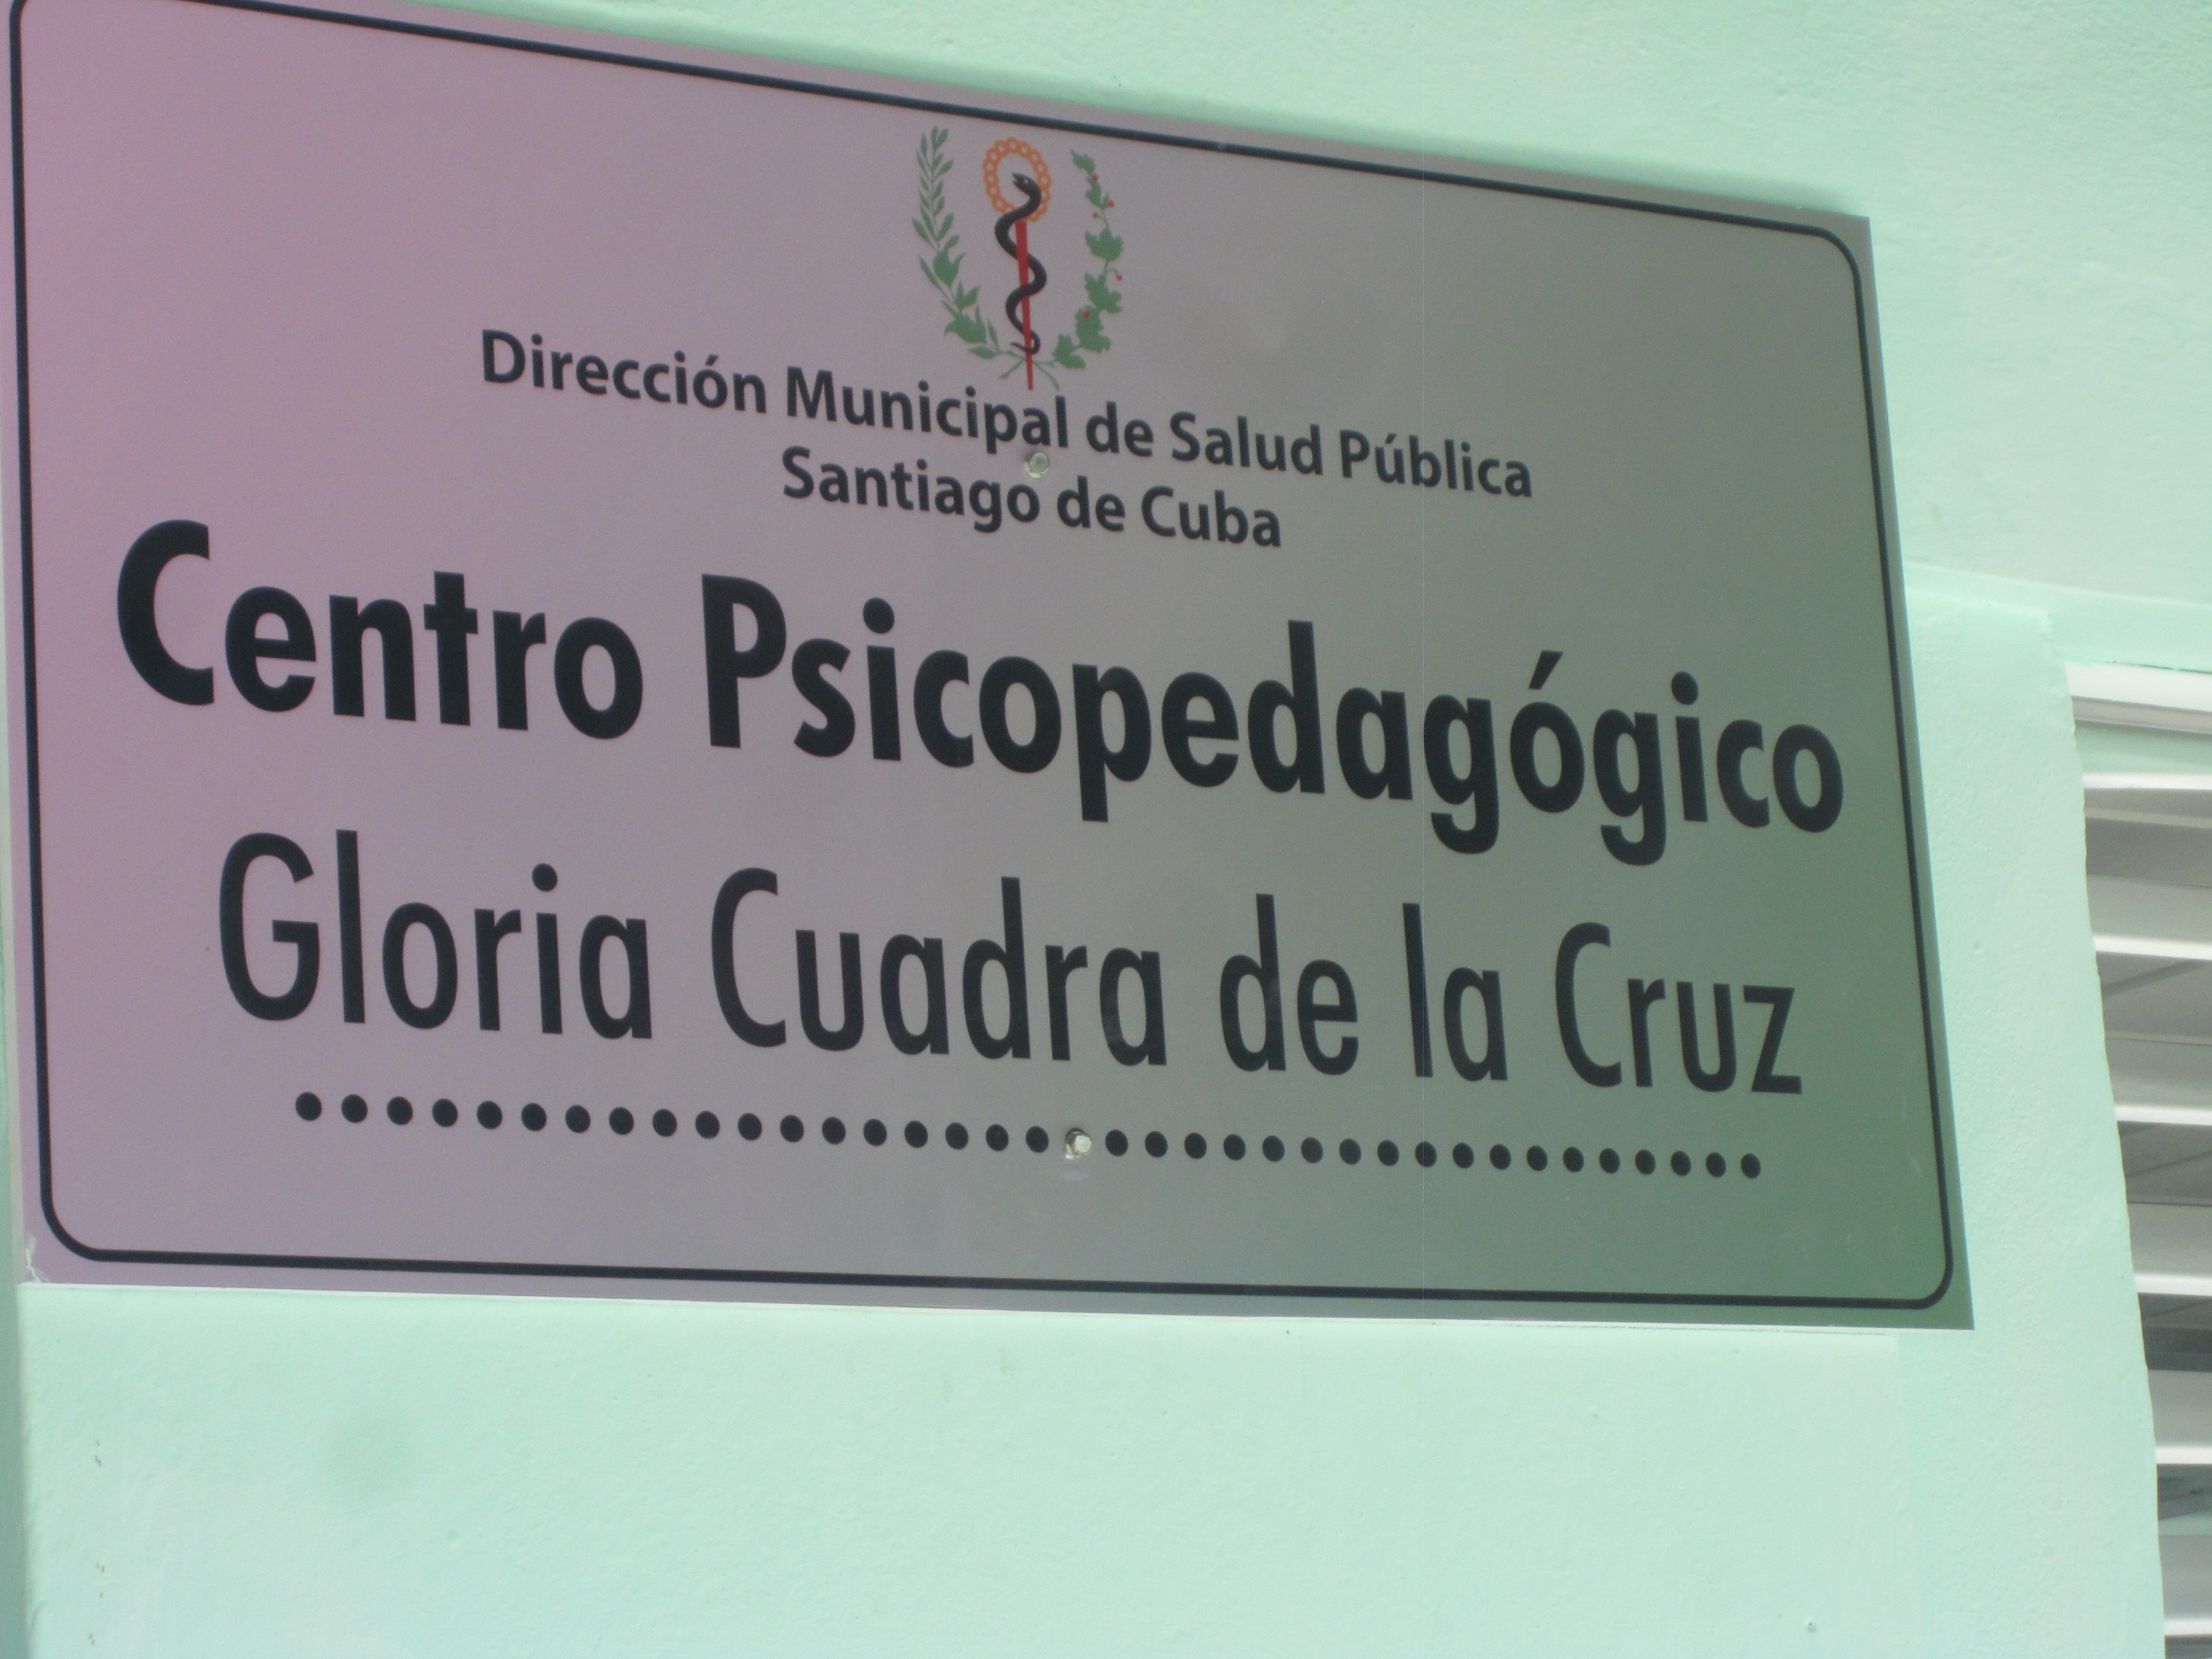 Projekt "Gloria Cuadras de La Cruz"